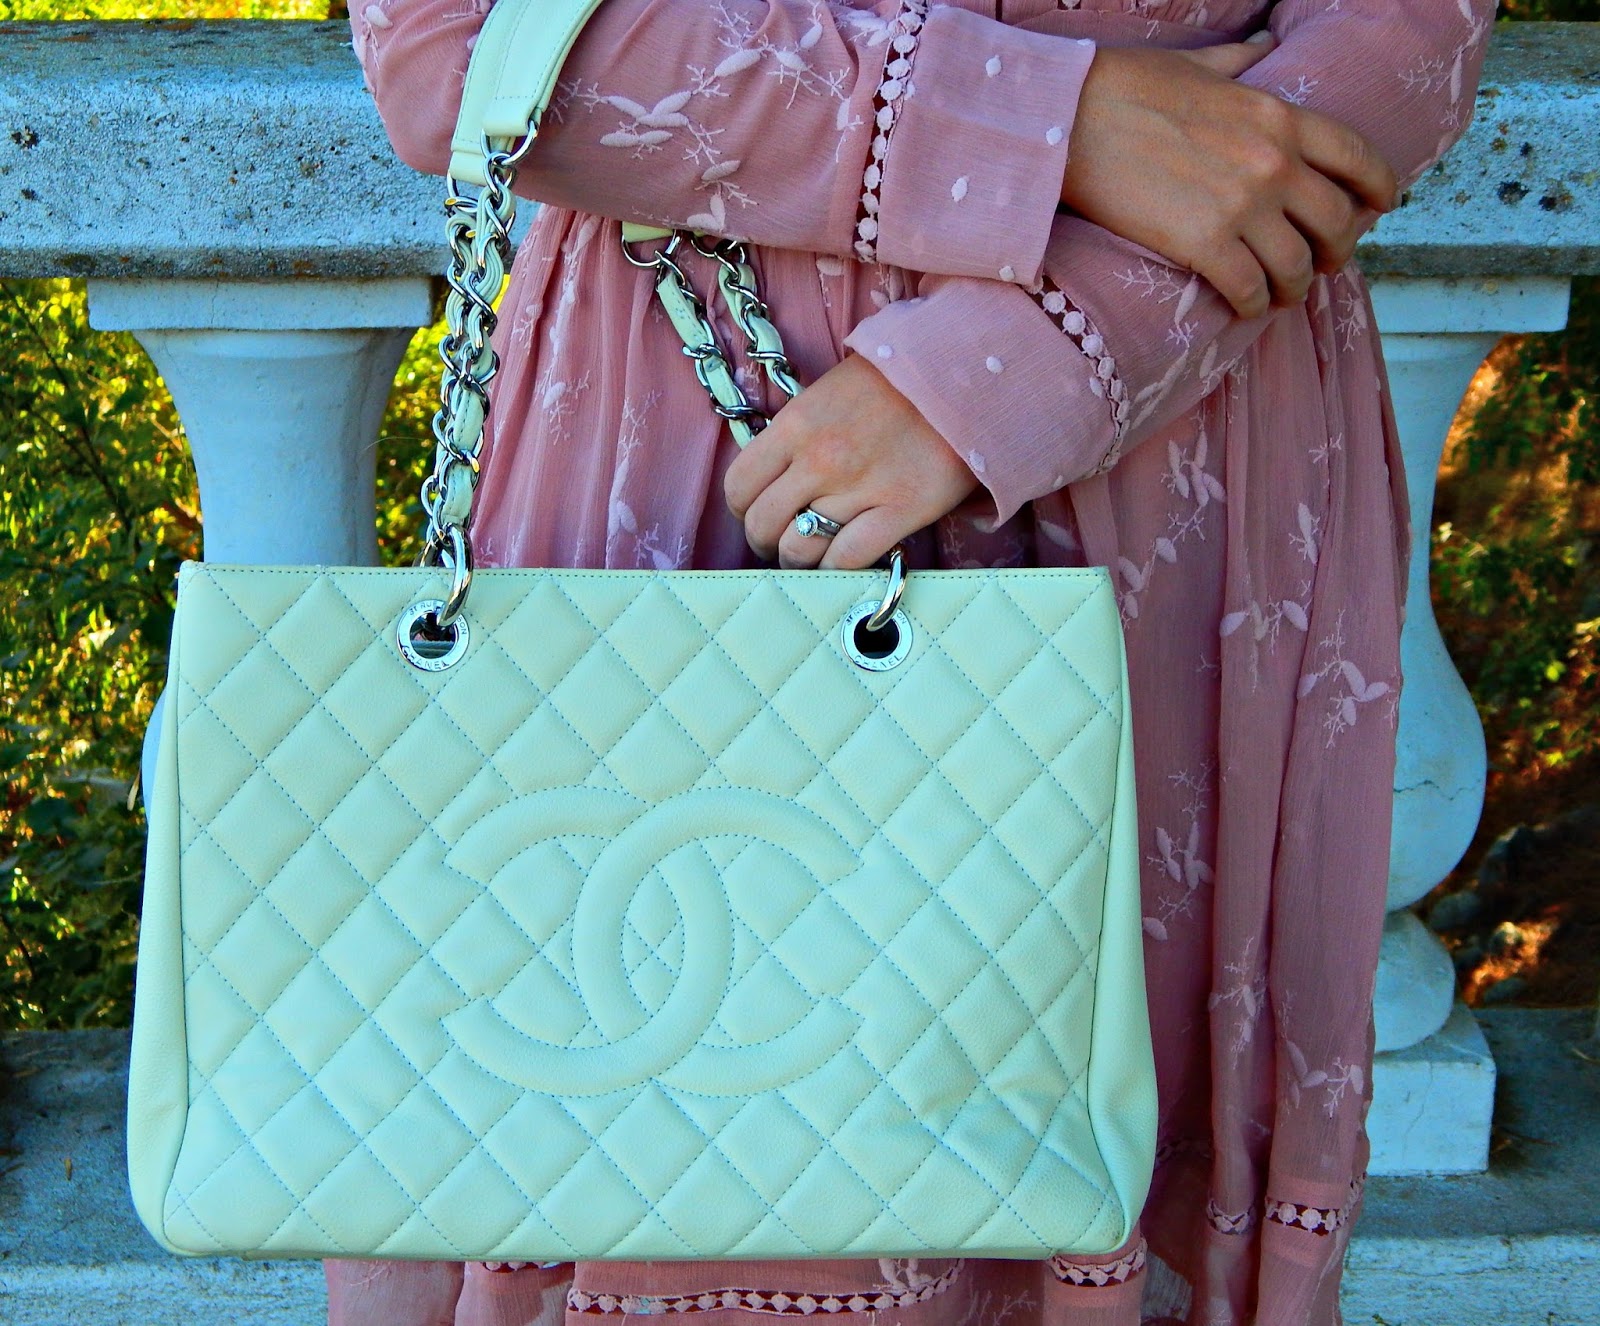 Trendlee Review: Luxury Handbag Rental 